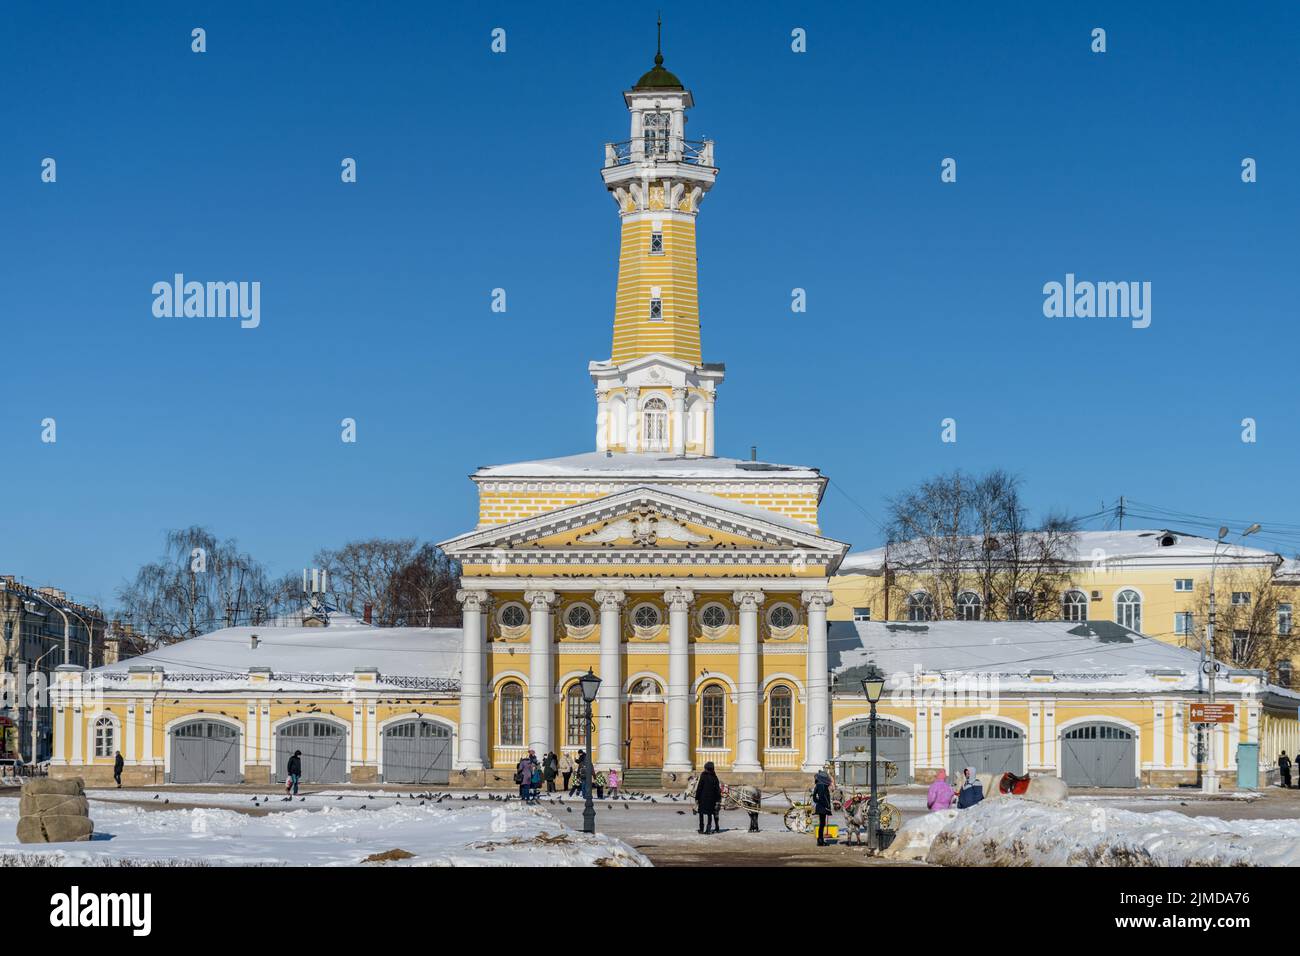 Kostroma, Rusia - 3 de marzo de 2018. Torre de Bomberos Kostroma en la Plaza Susaninskaya. Soleado día frío a principios de la primavera rusa. Foto de stock